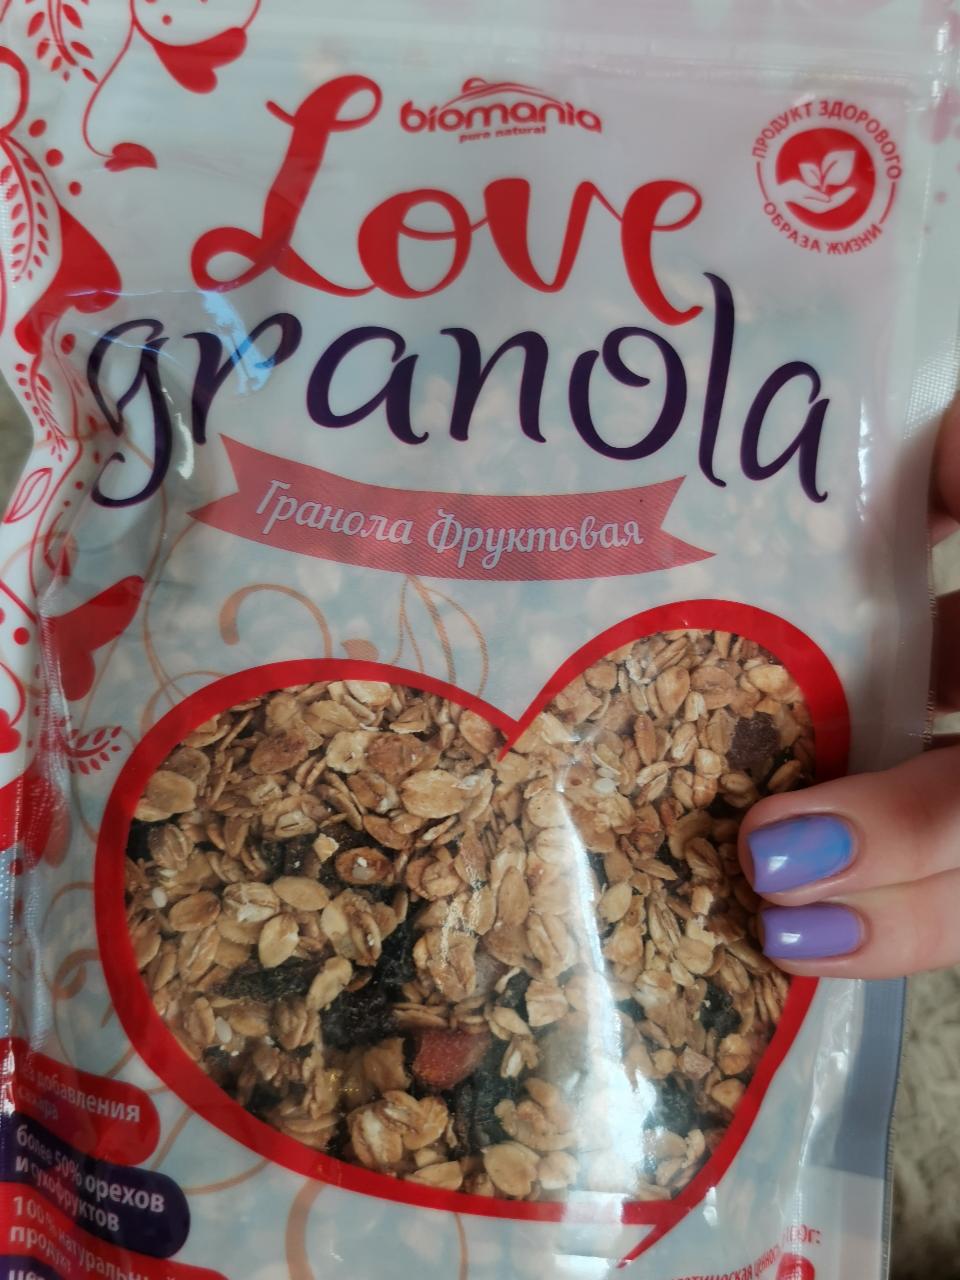 Фото - Фруктовые мюсли Love granola Biomania